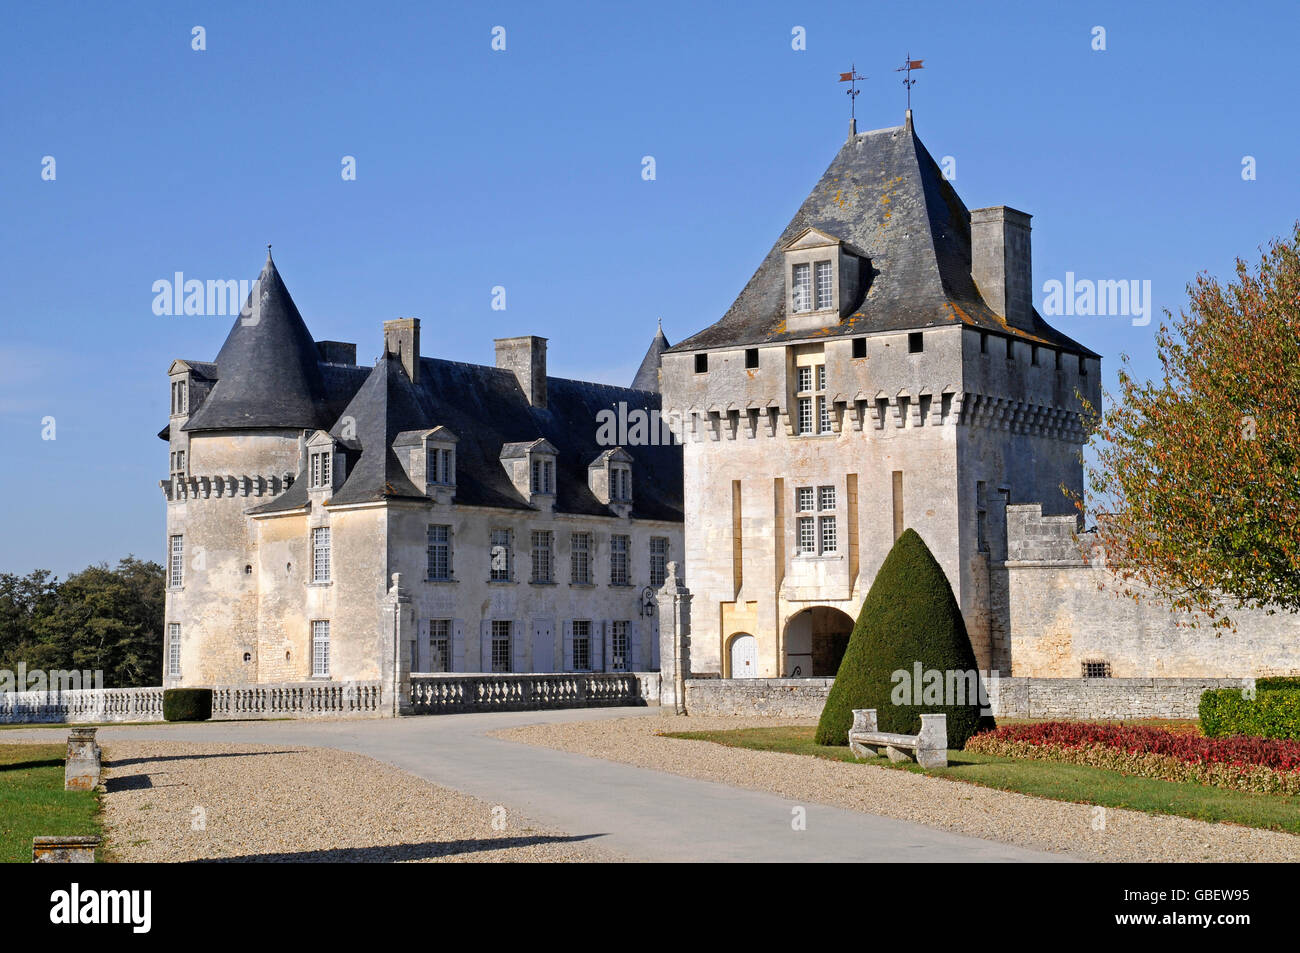 Chateau de la Roche Courbon Saint-Porchaire, Saintes, Charente-Maritime, Poitou-Charentes, France Stock Photo